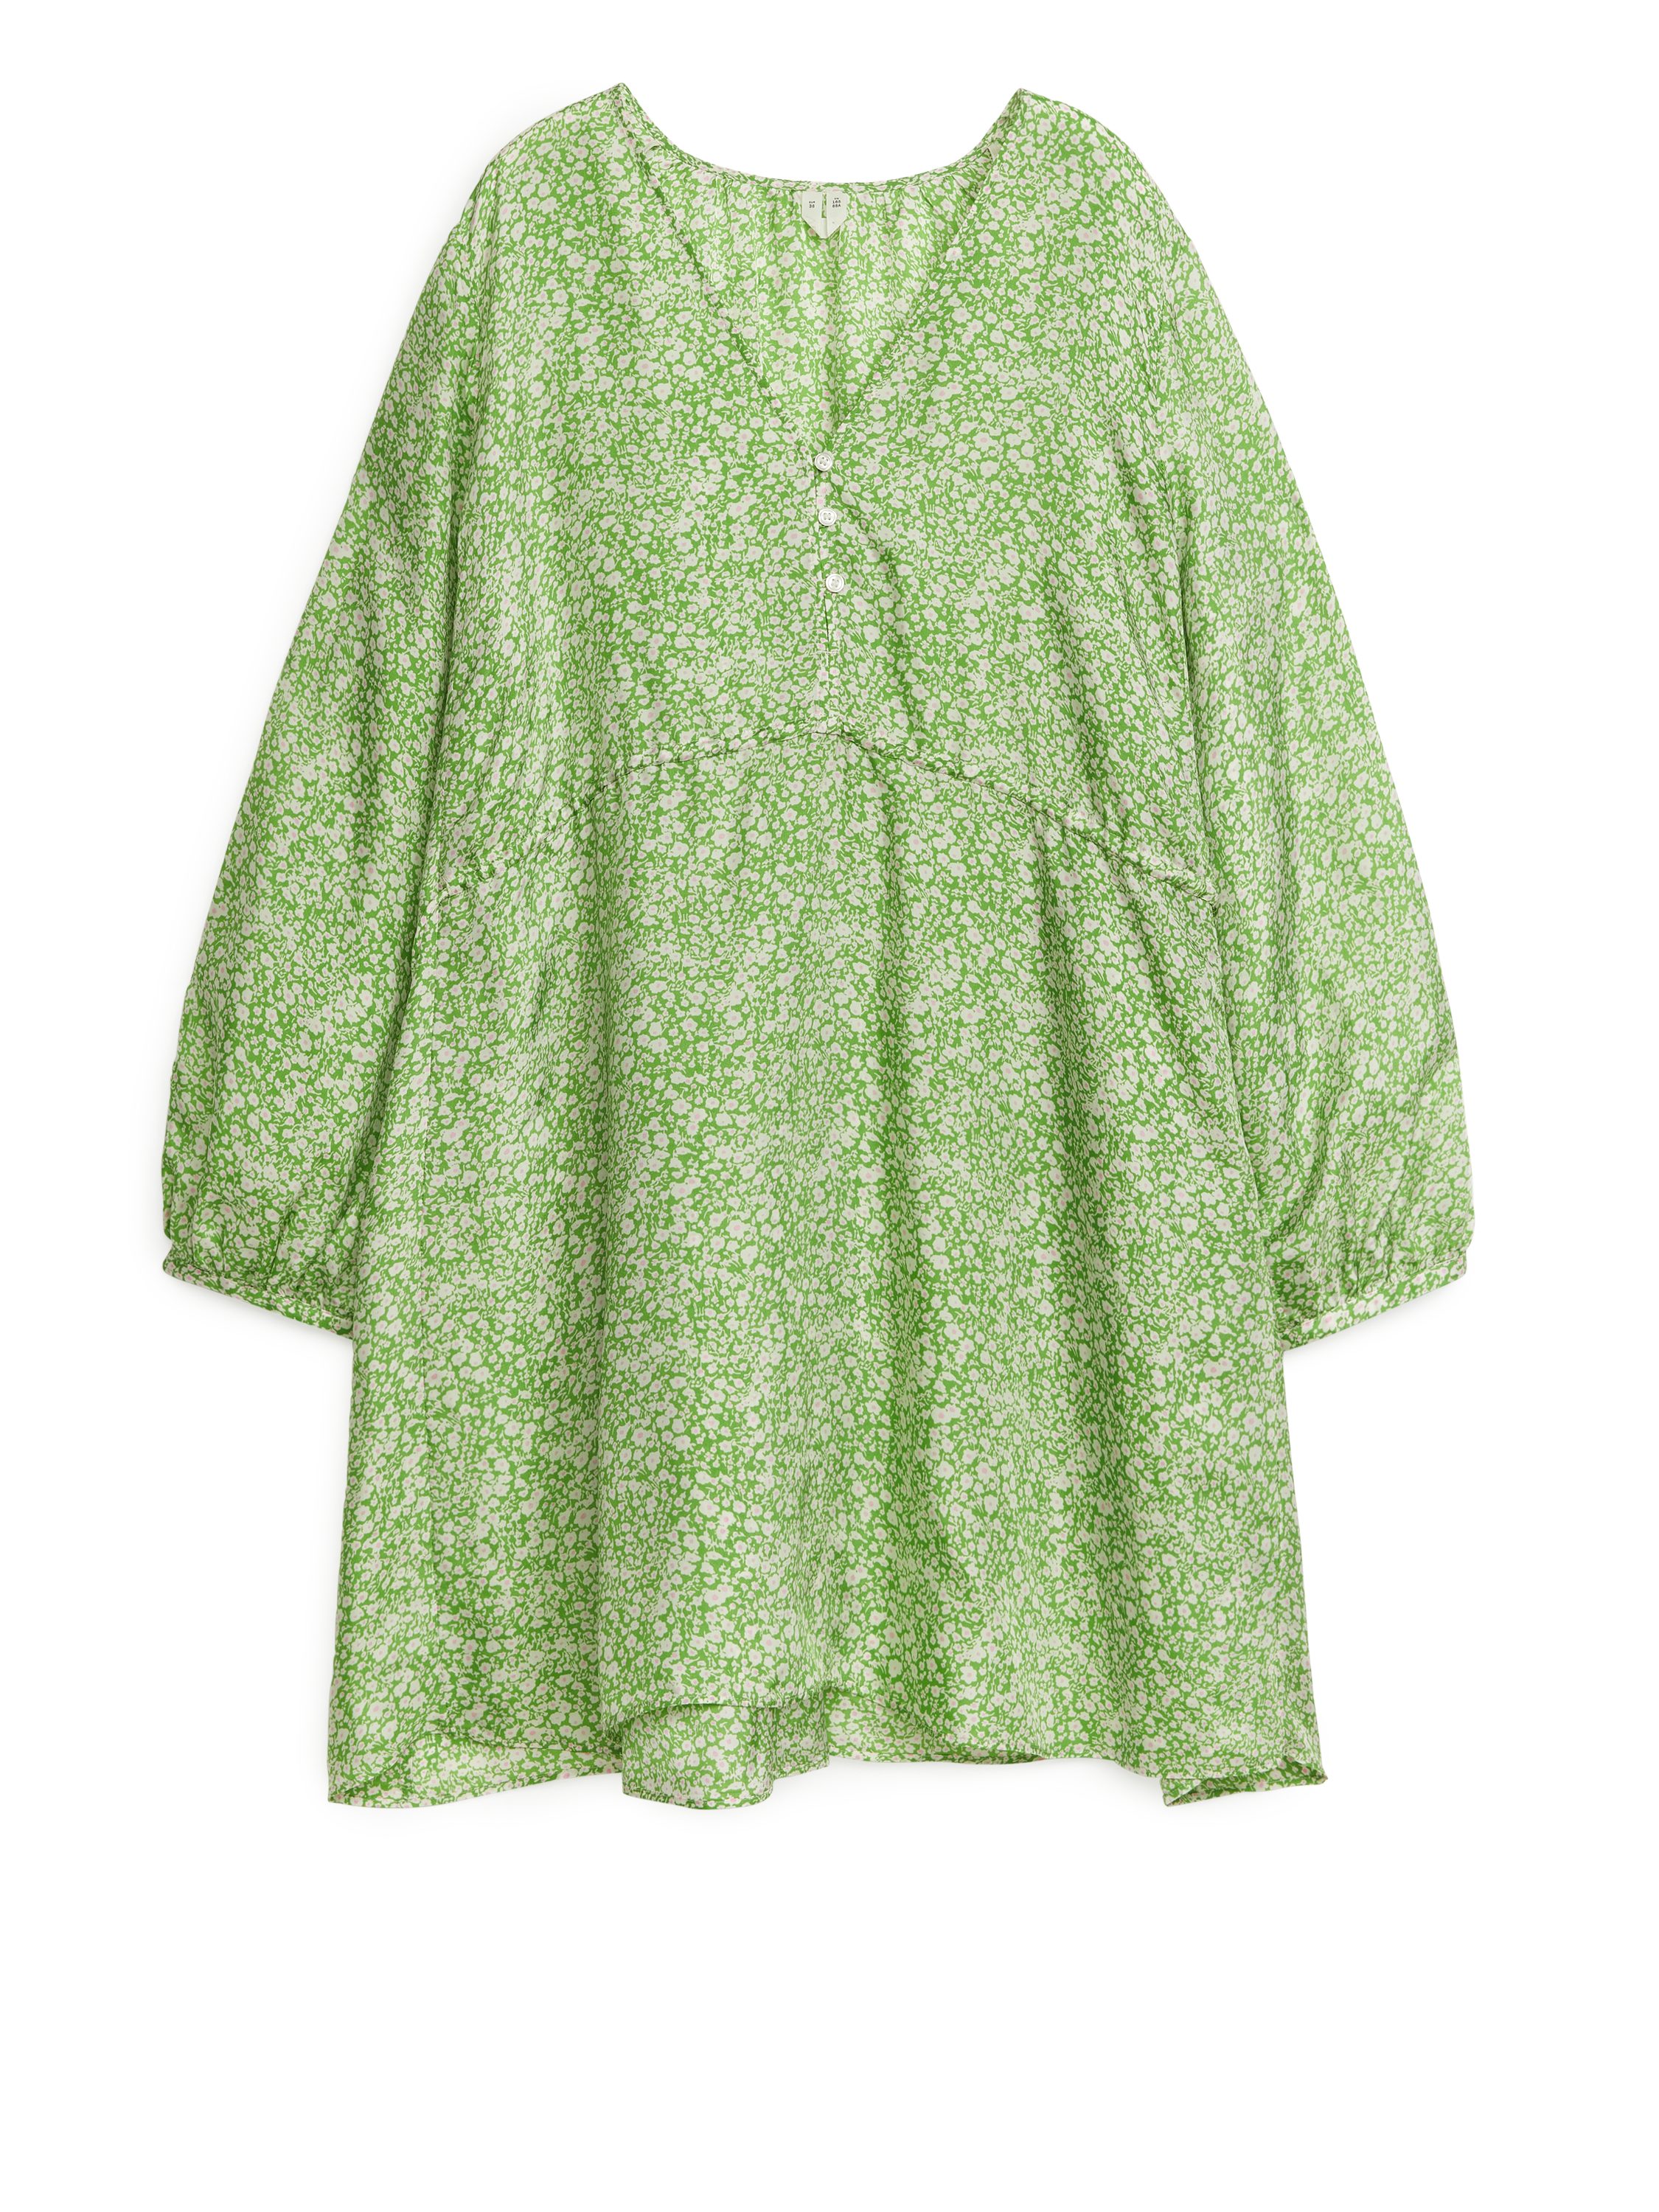 Billede af Arket A-formet Minikjole Grøn/hvid, Hverdagskjoler. Farve: Green/white I størrelse 42